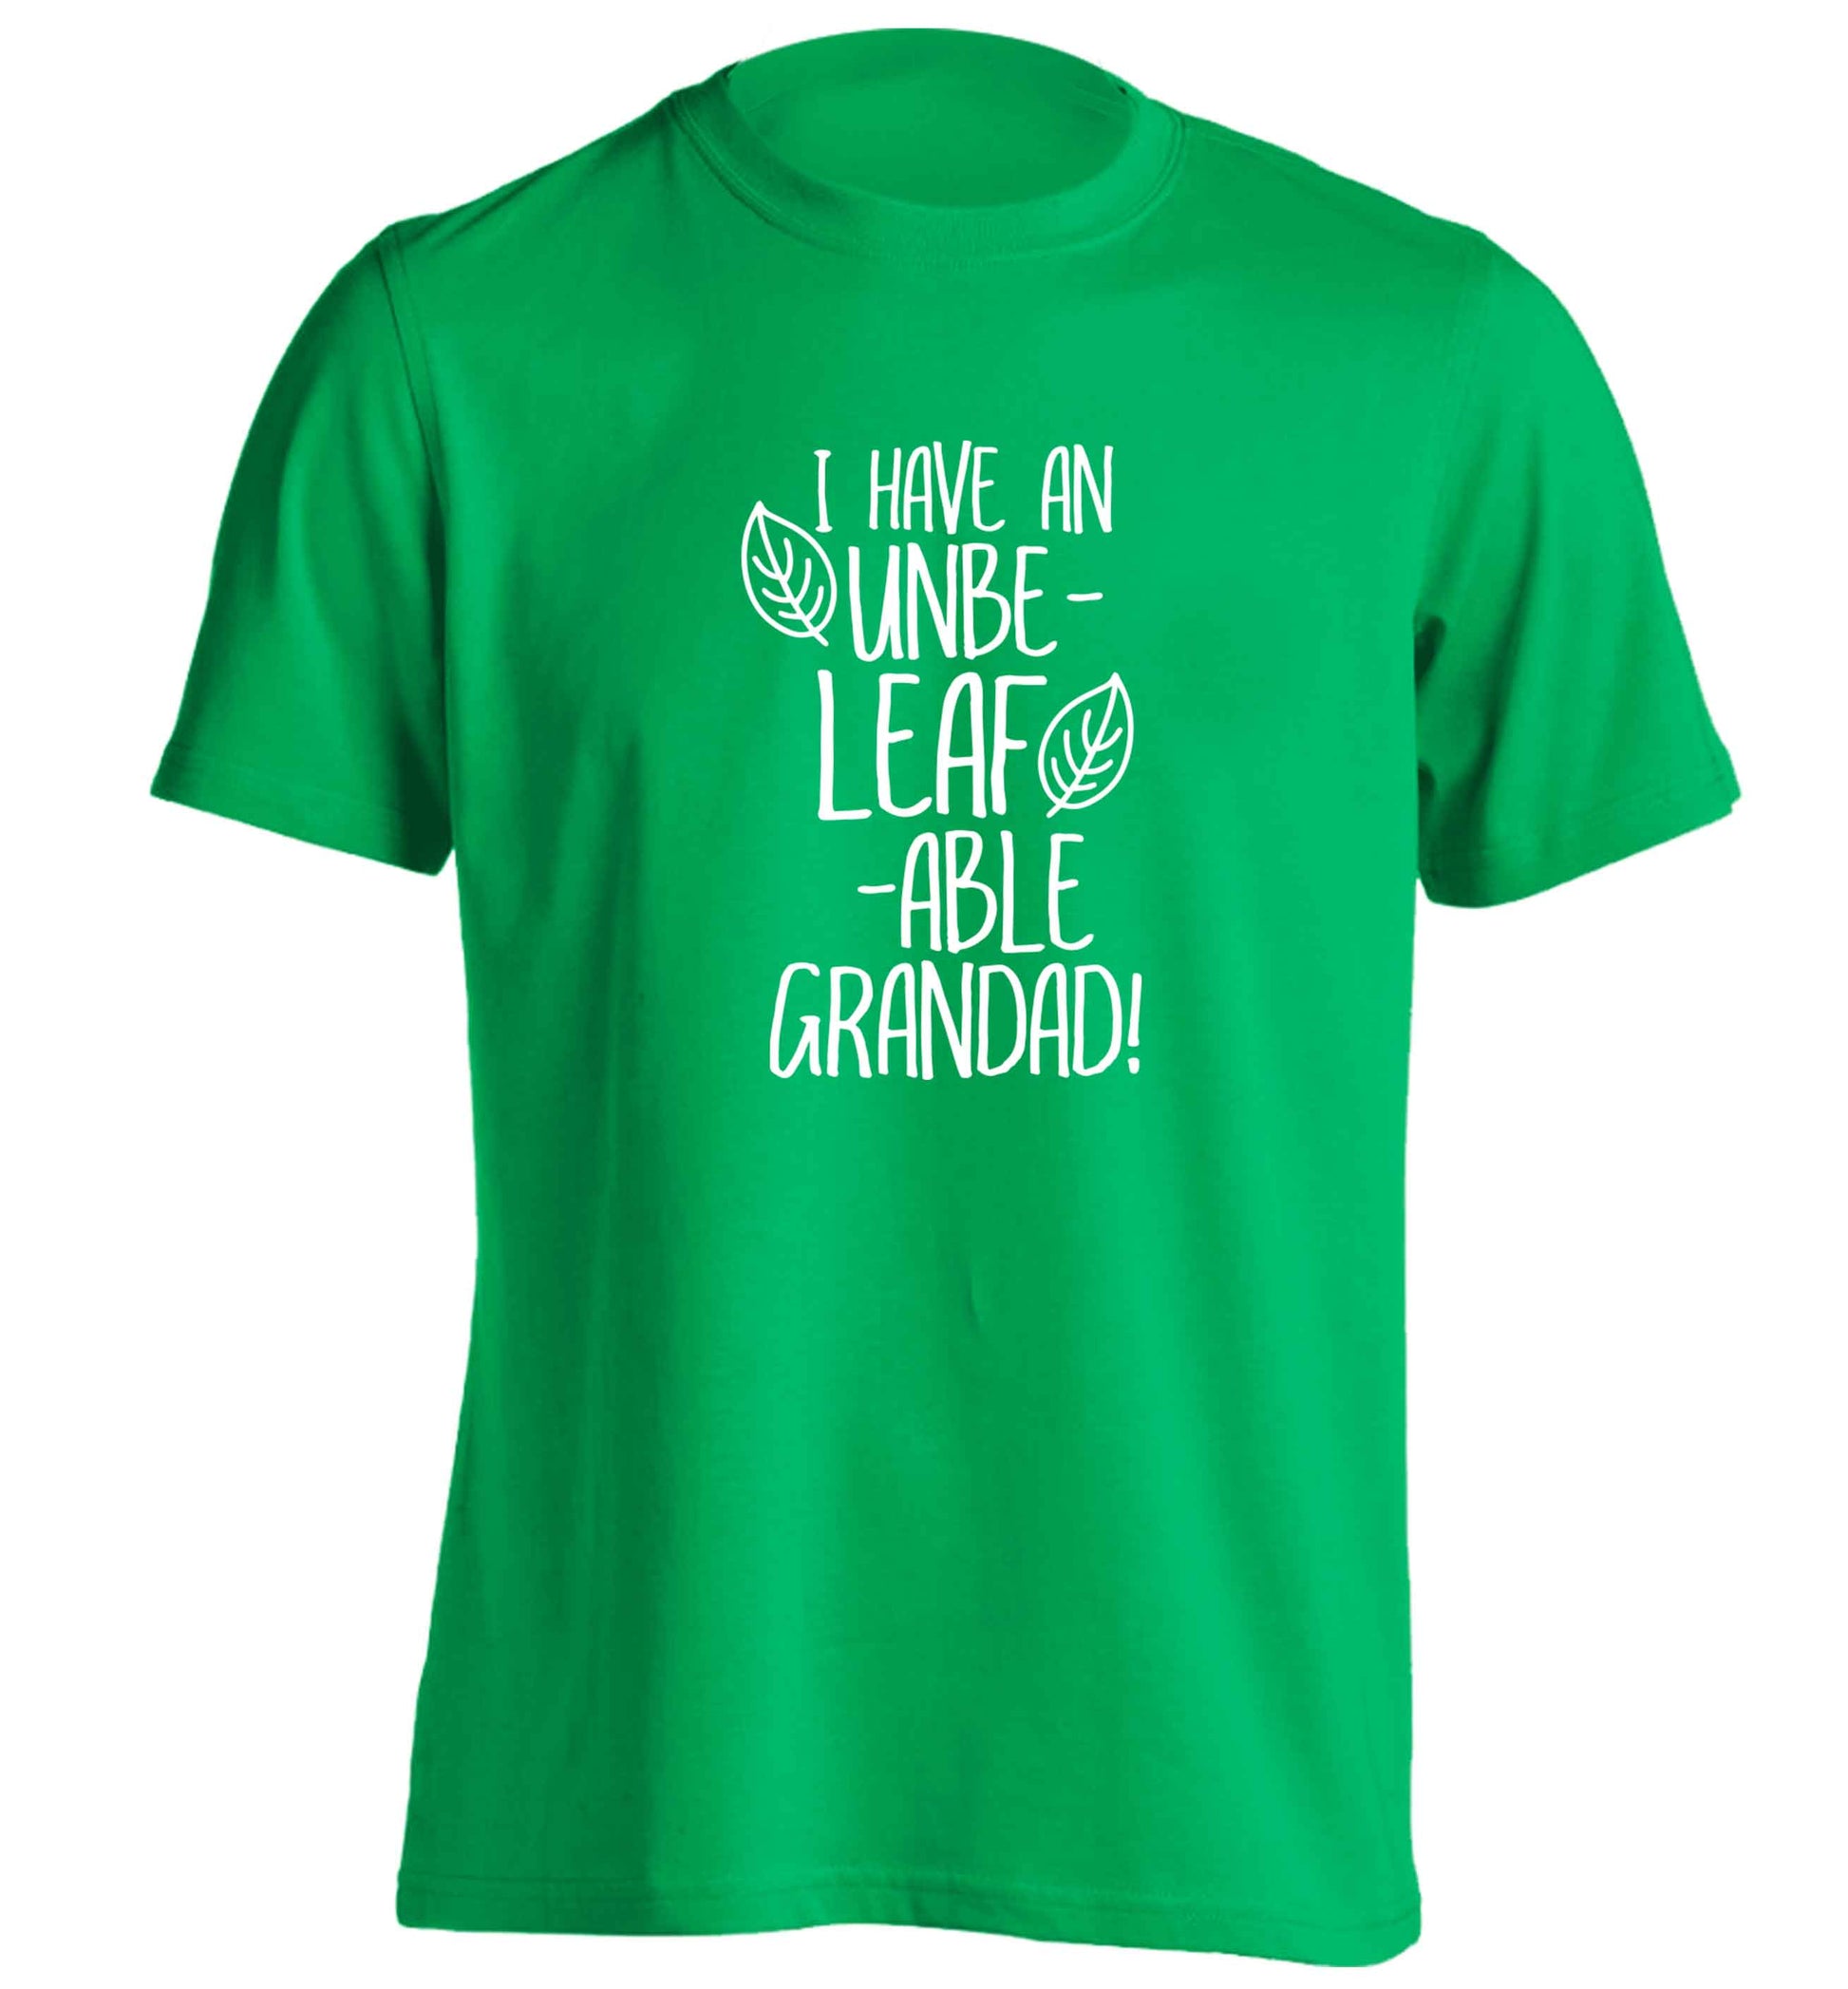 I have an unbe-leaf-able grandad adults unisex green Tshirt 2XL